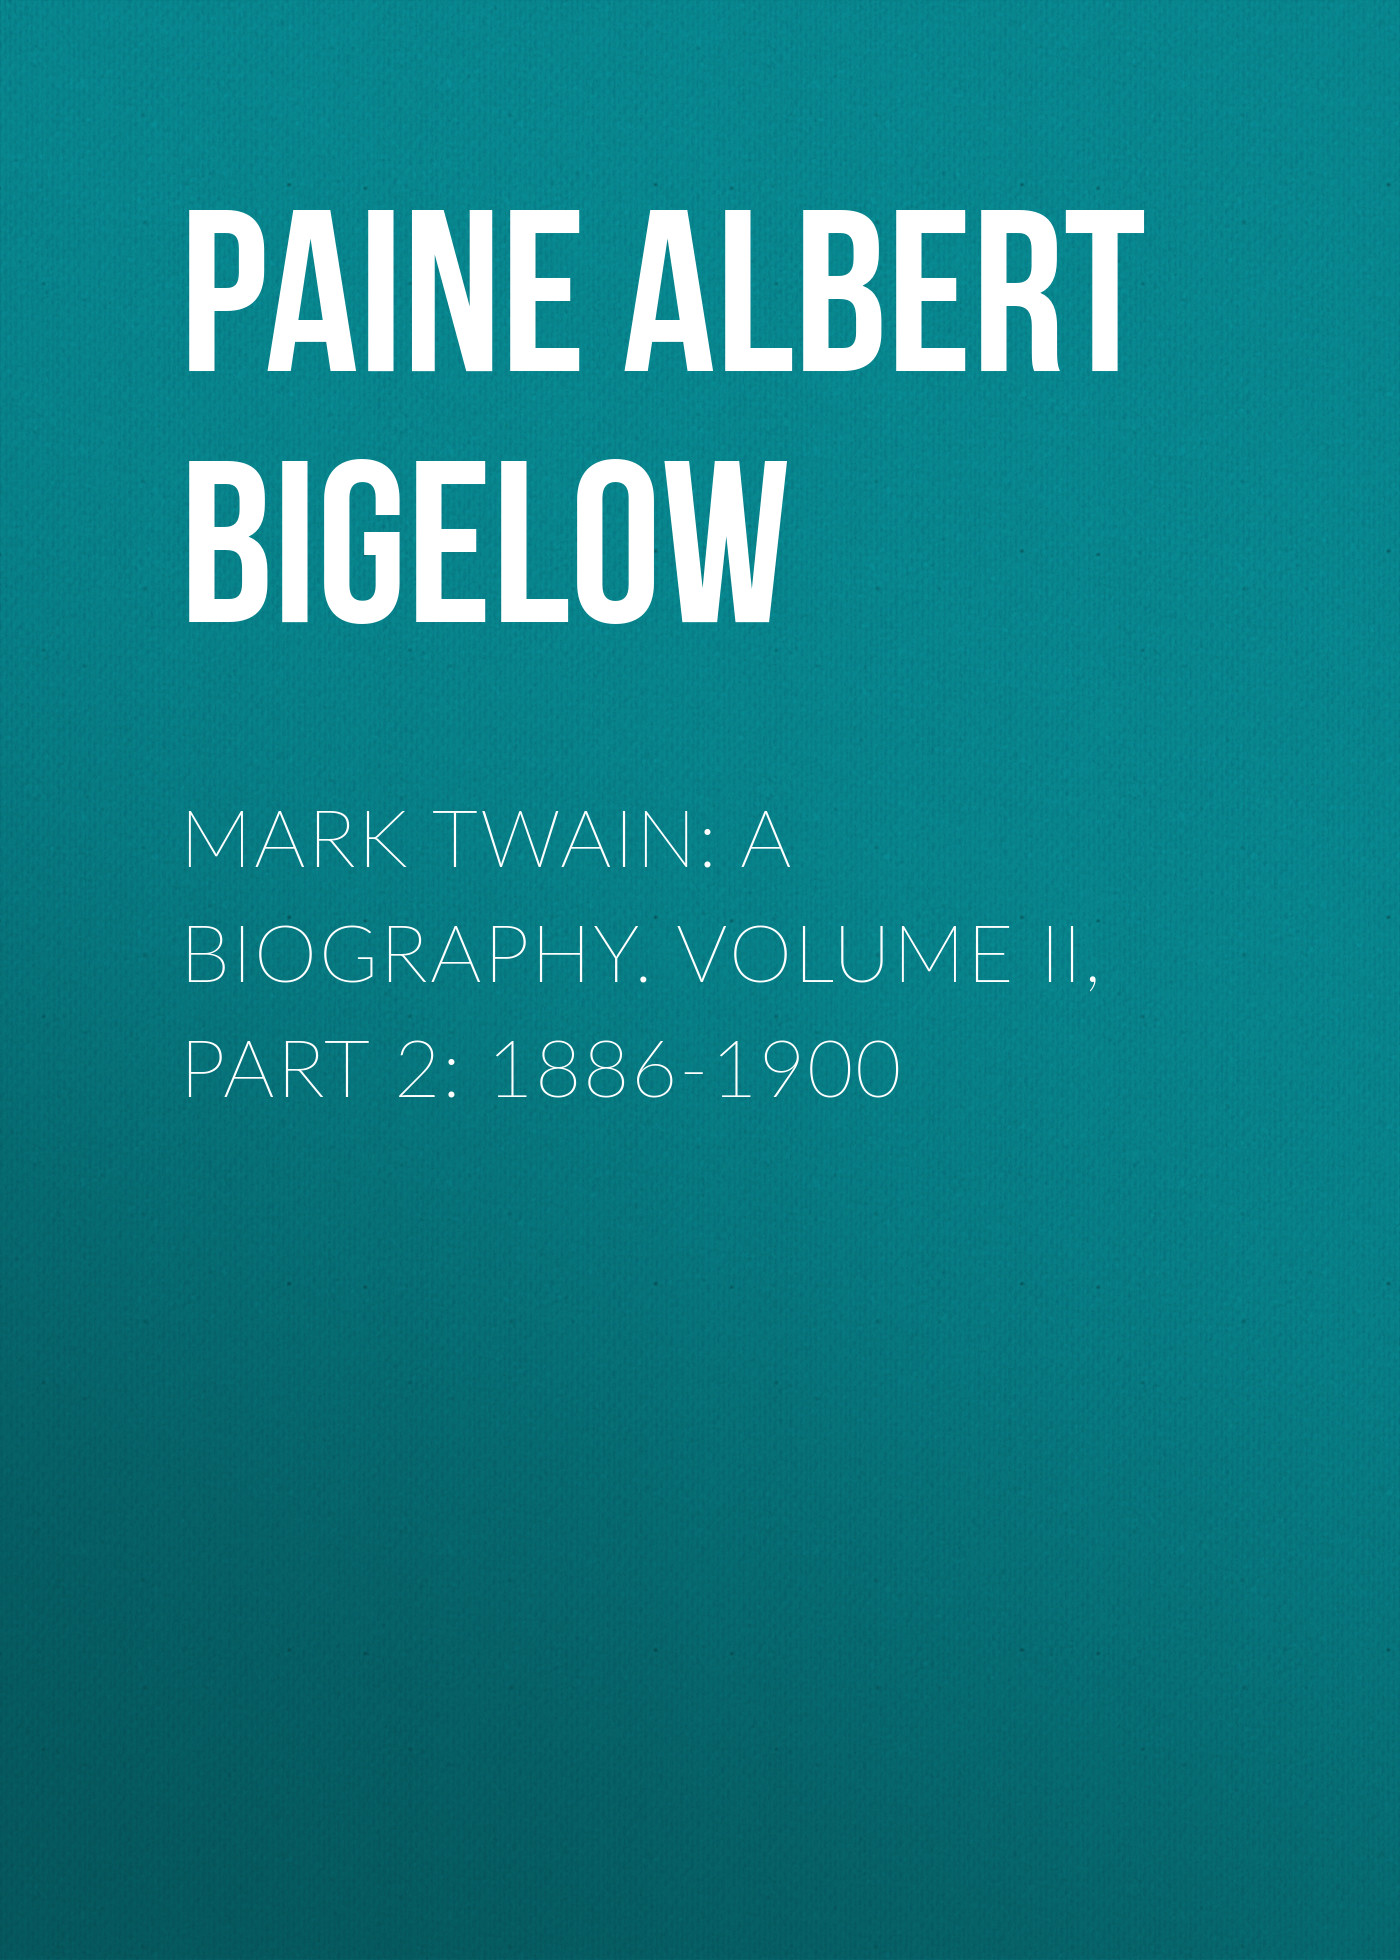 Книга Mark Twain: A Biography. Volume II, Part 2: 1886-1900 из серии , созданная Albert Paine, может относится к жанру Биографии и Мемуары, Зарубежная старинная литература. Стоимость электронной книги Mark Twain: A Biography. Volume II, Part 2: 1886-1900 с идентификатором 34840462 составляет 0 руб.